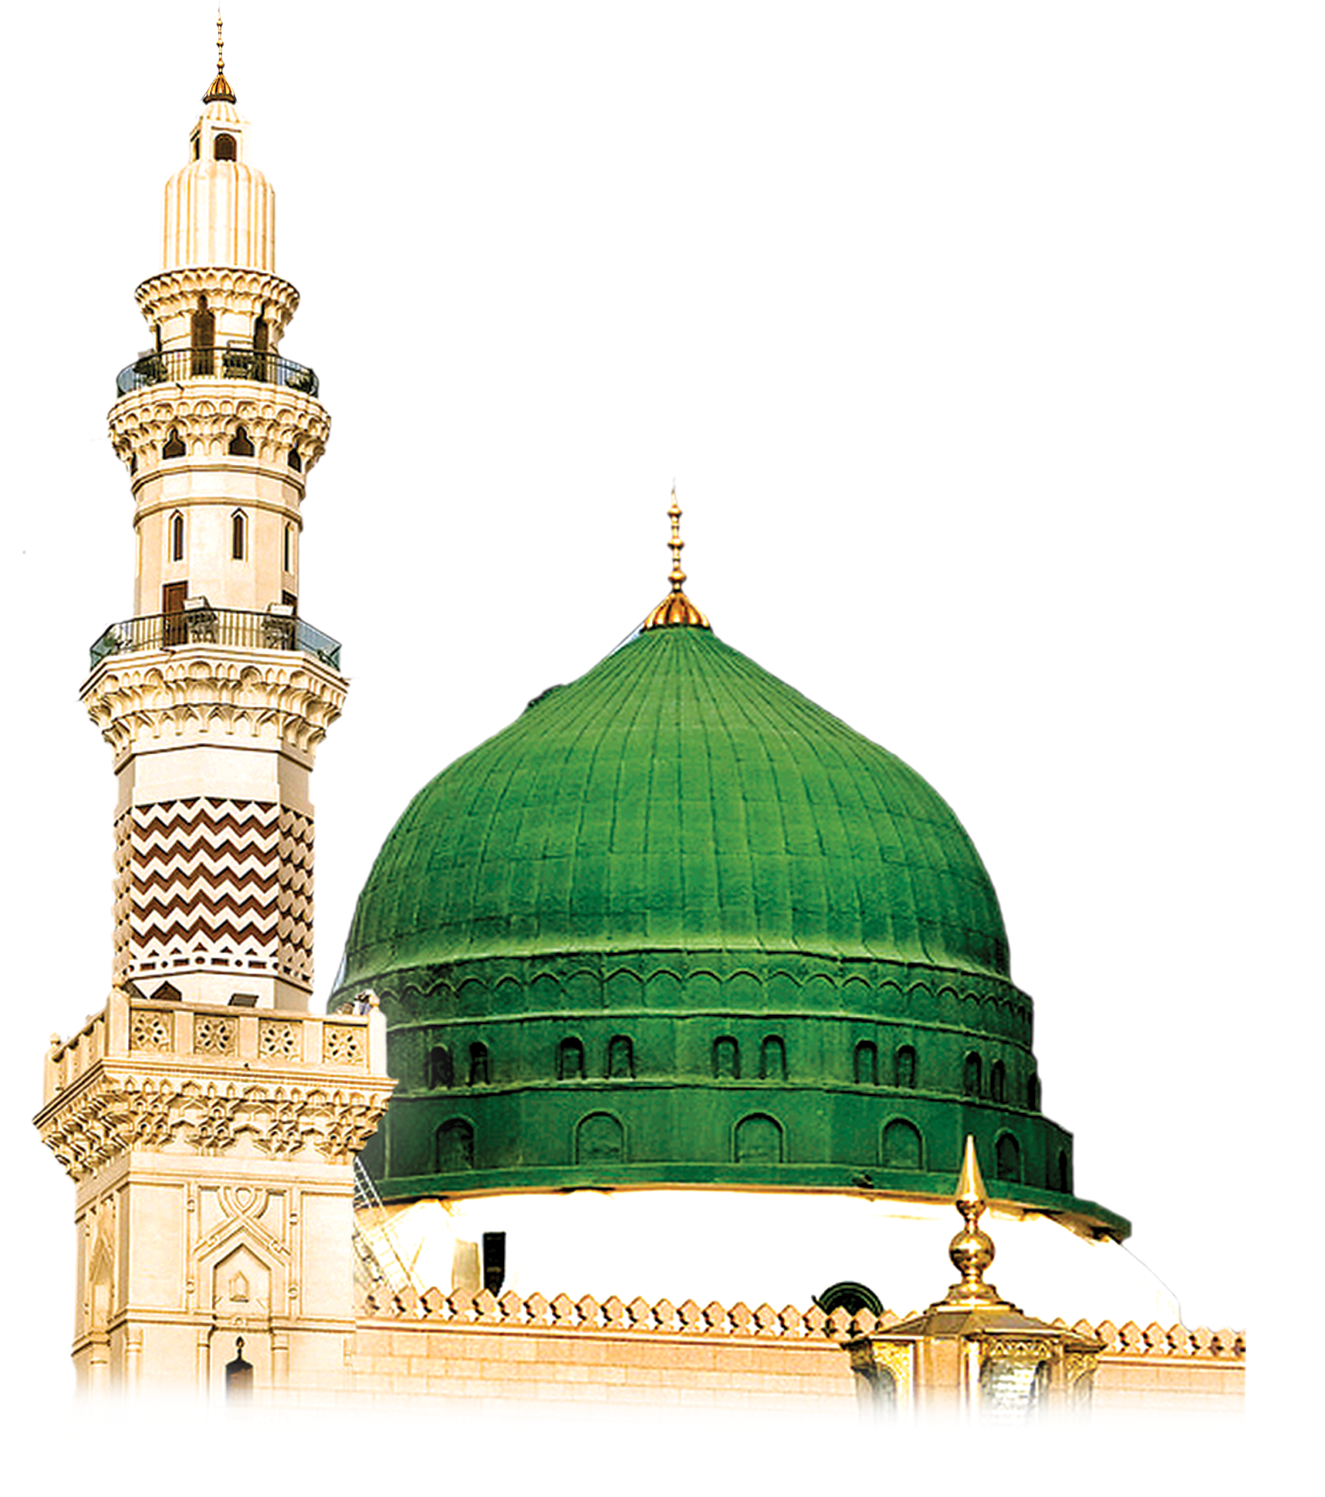 모바일 이슬람 벽지,둥근 천장,둥근 천장,예배 장소,사원,초록